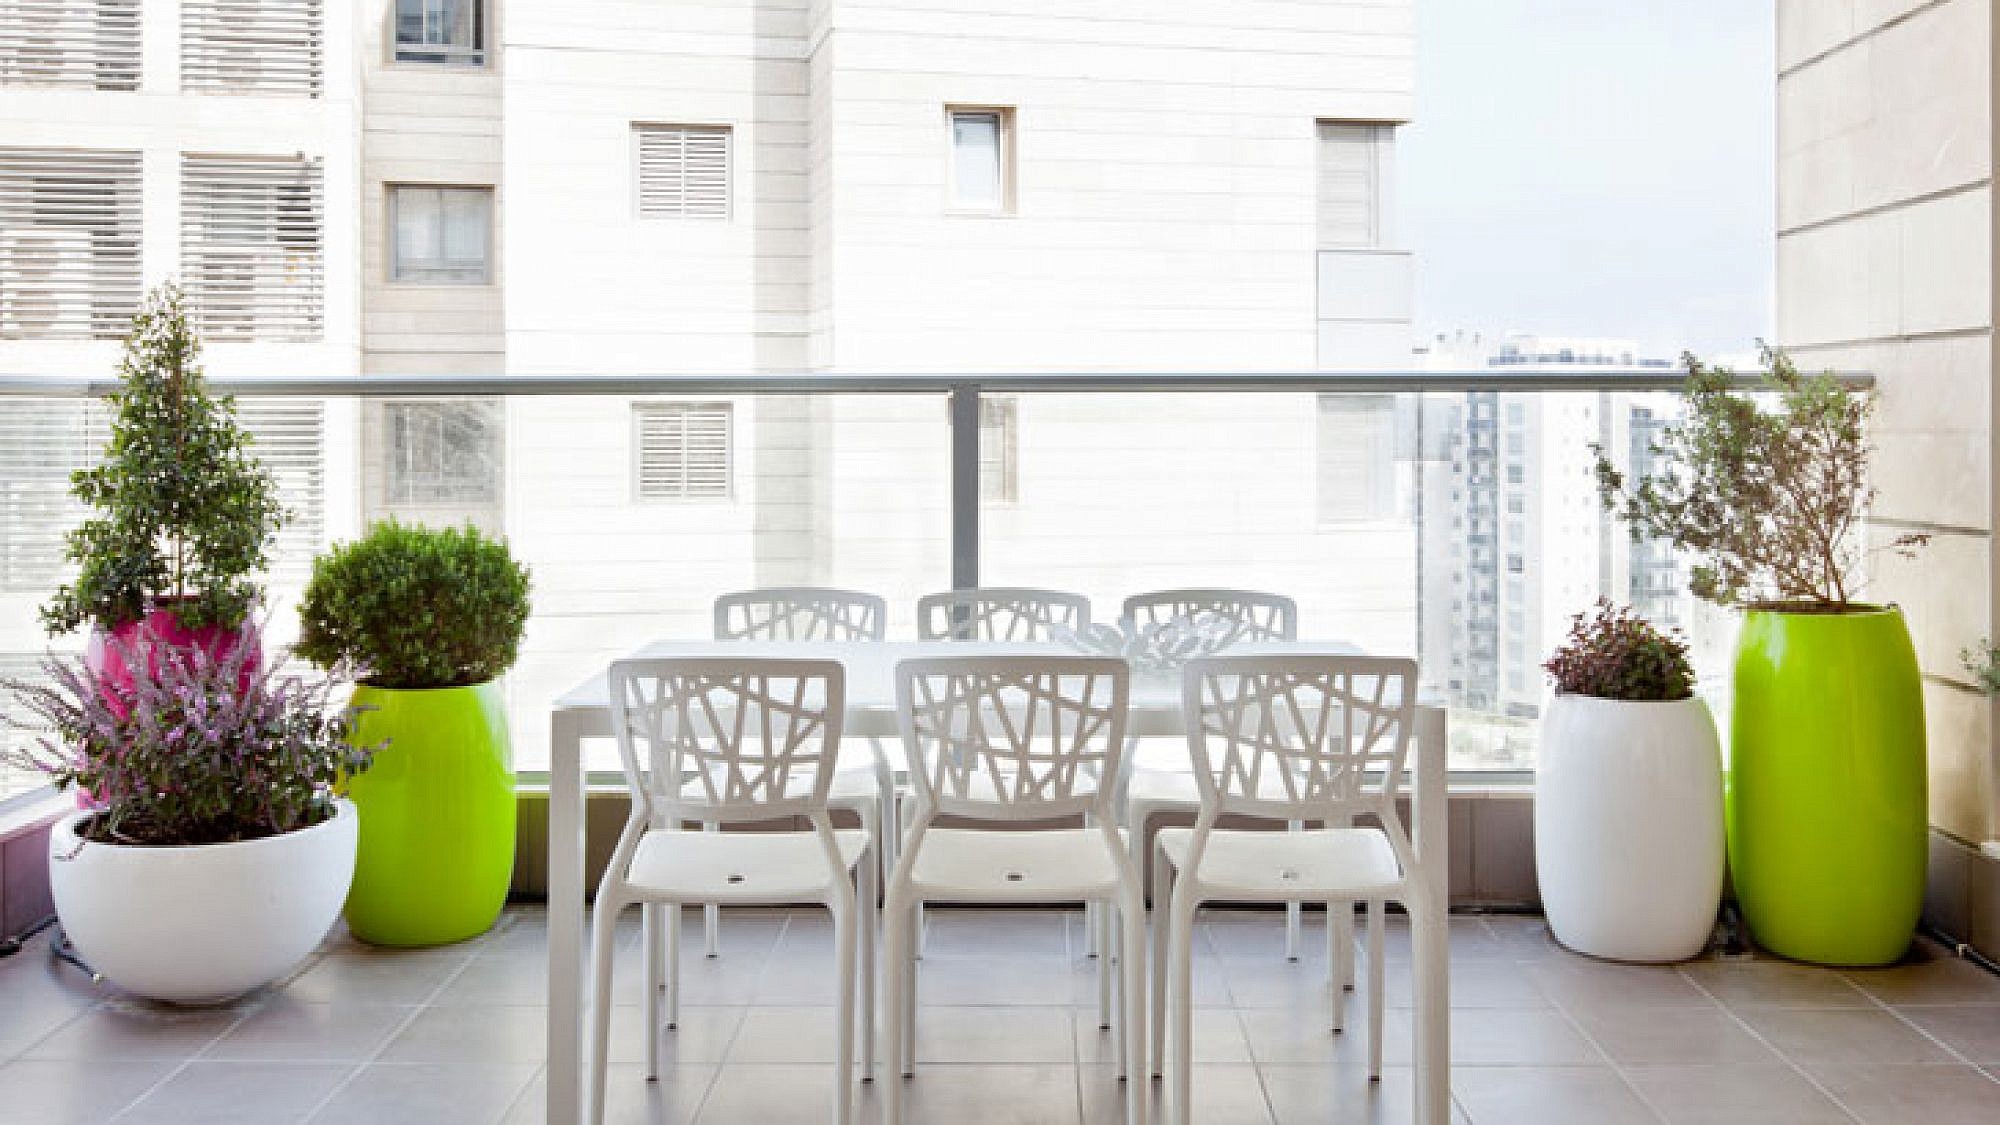 במרפסת שולבו כדים צבעוניים גדולים לצד מערכת ישיבה לבנה מאיי. די.דיזיין | צלם: בועז לביא